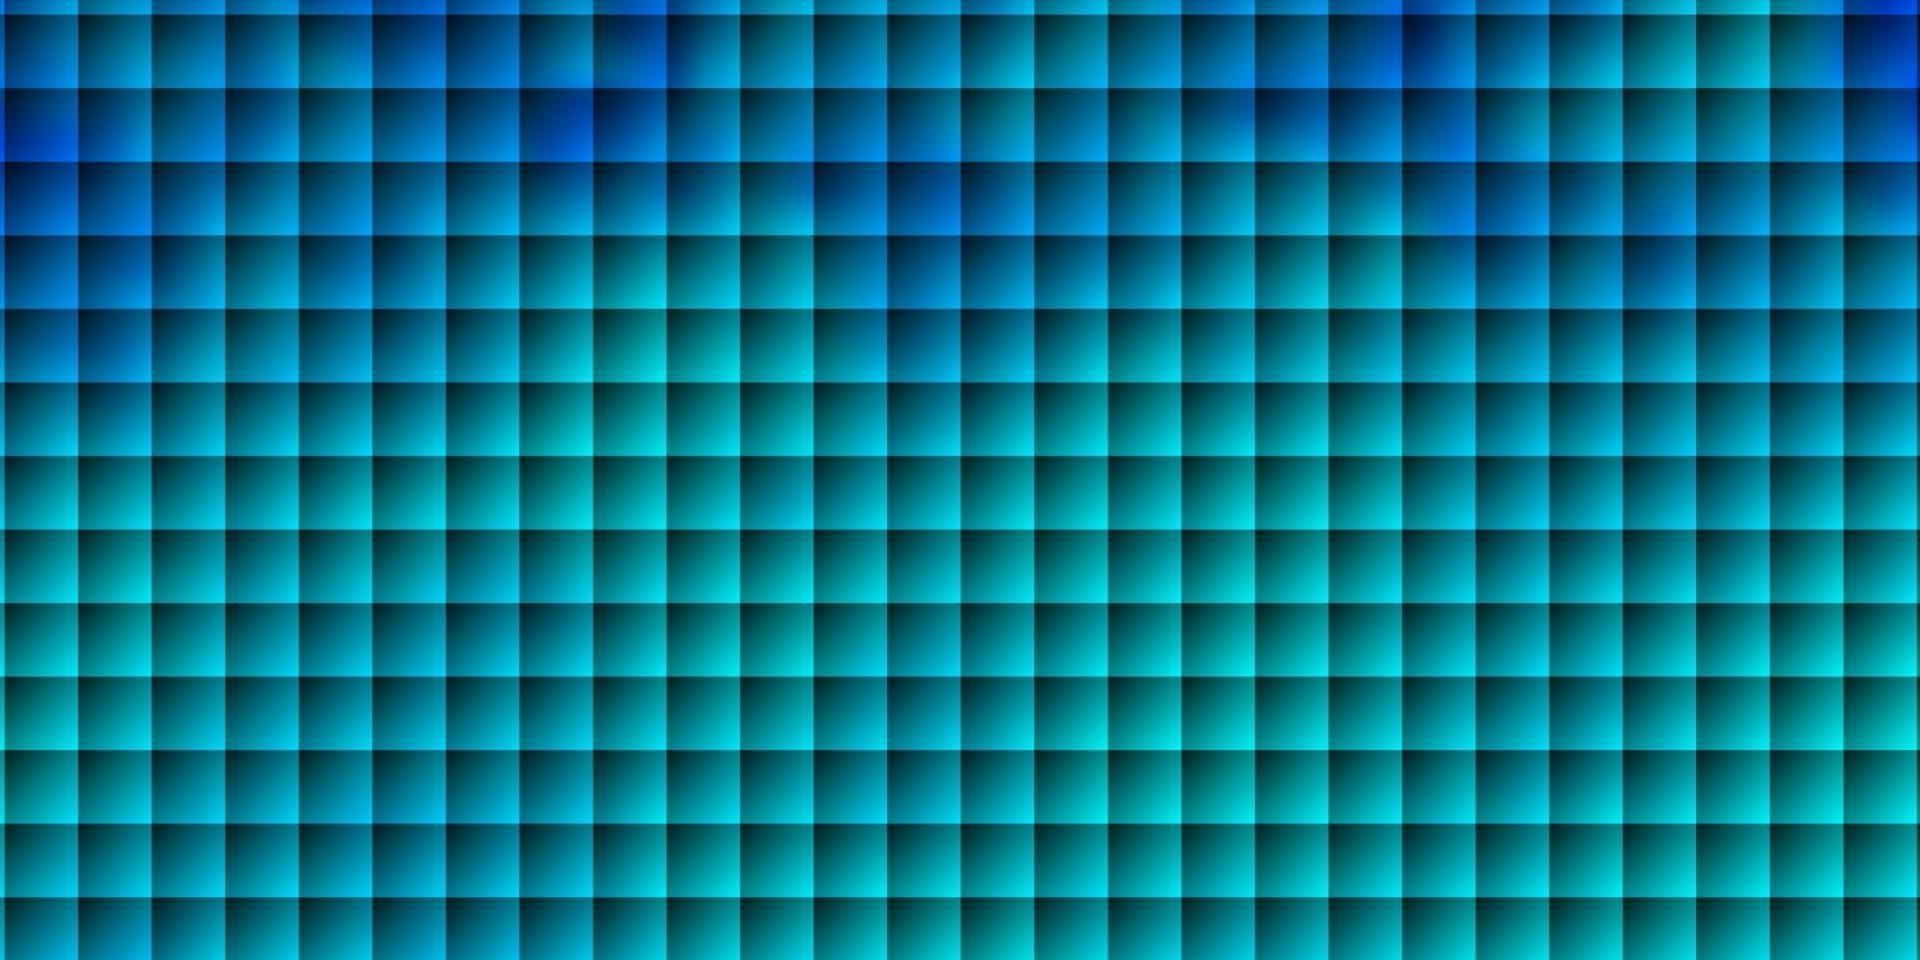 modelo de vetor azul claro com retângulos.